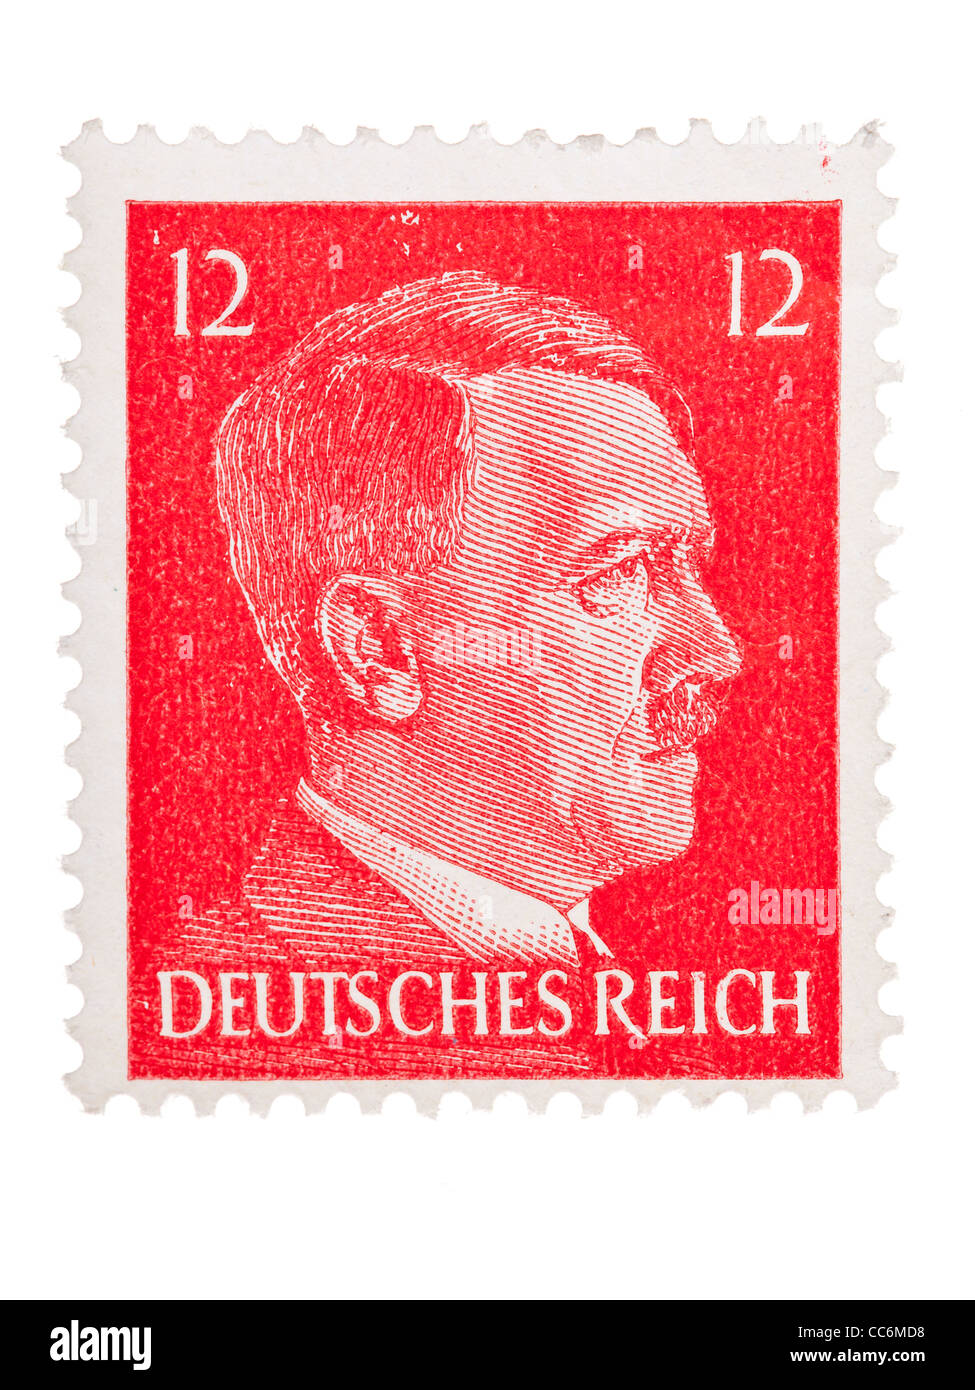 Postage stamp: German Reich, Adolf Hitler, 1941/ 1944, 12 pfennig, mint  condition Stock Photo - Alamy